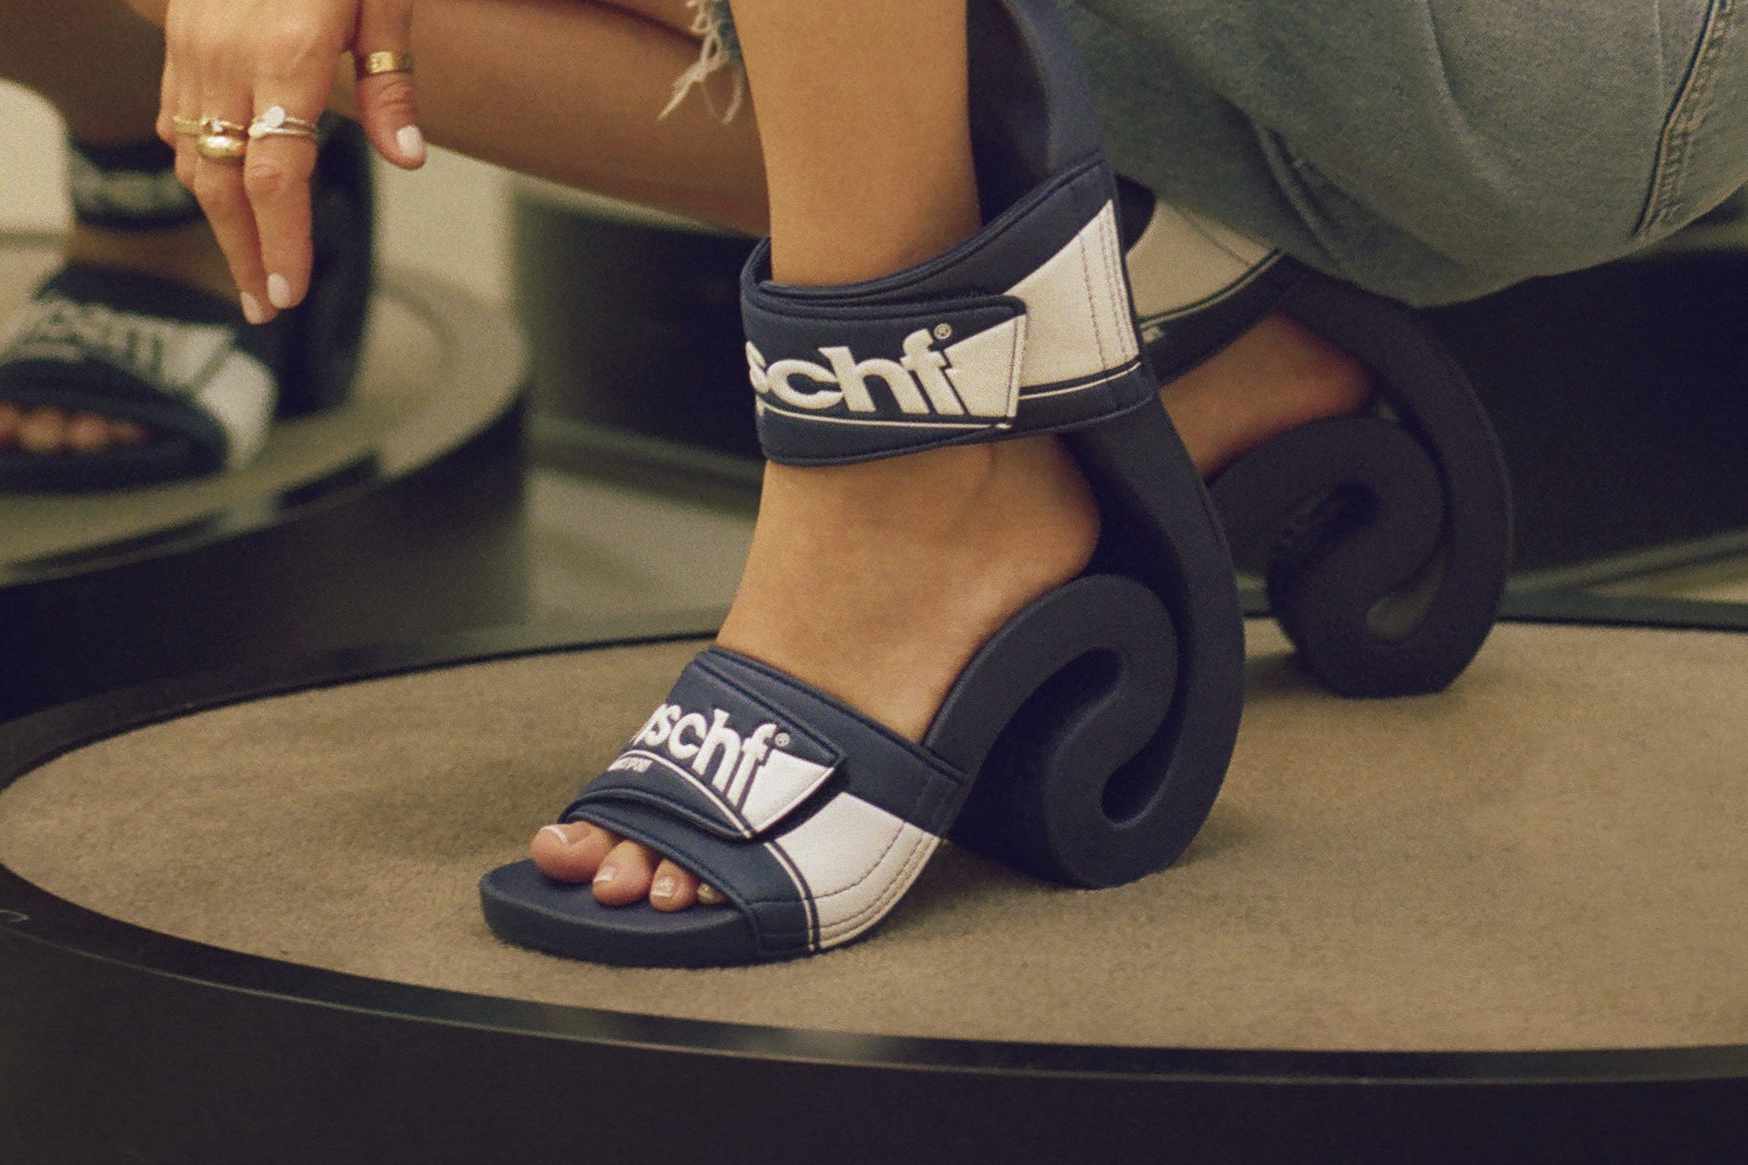 MSCHF's Flipped Flop slide sandal heels worn by Bobbi Althoff